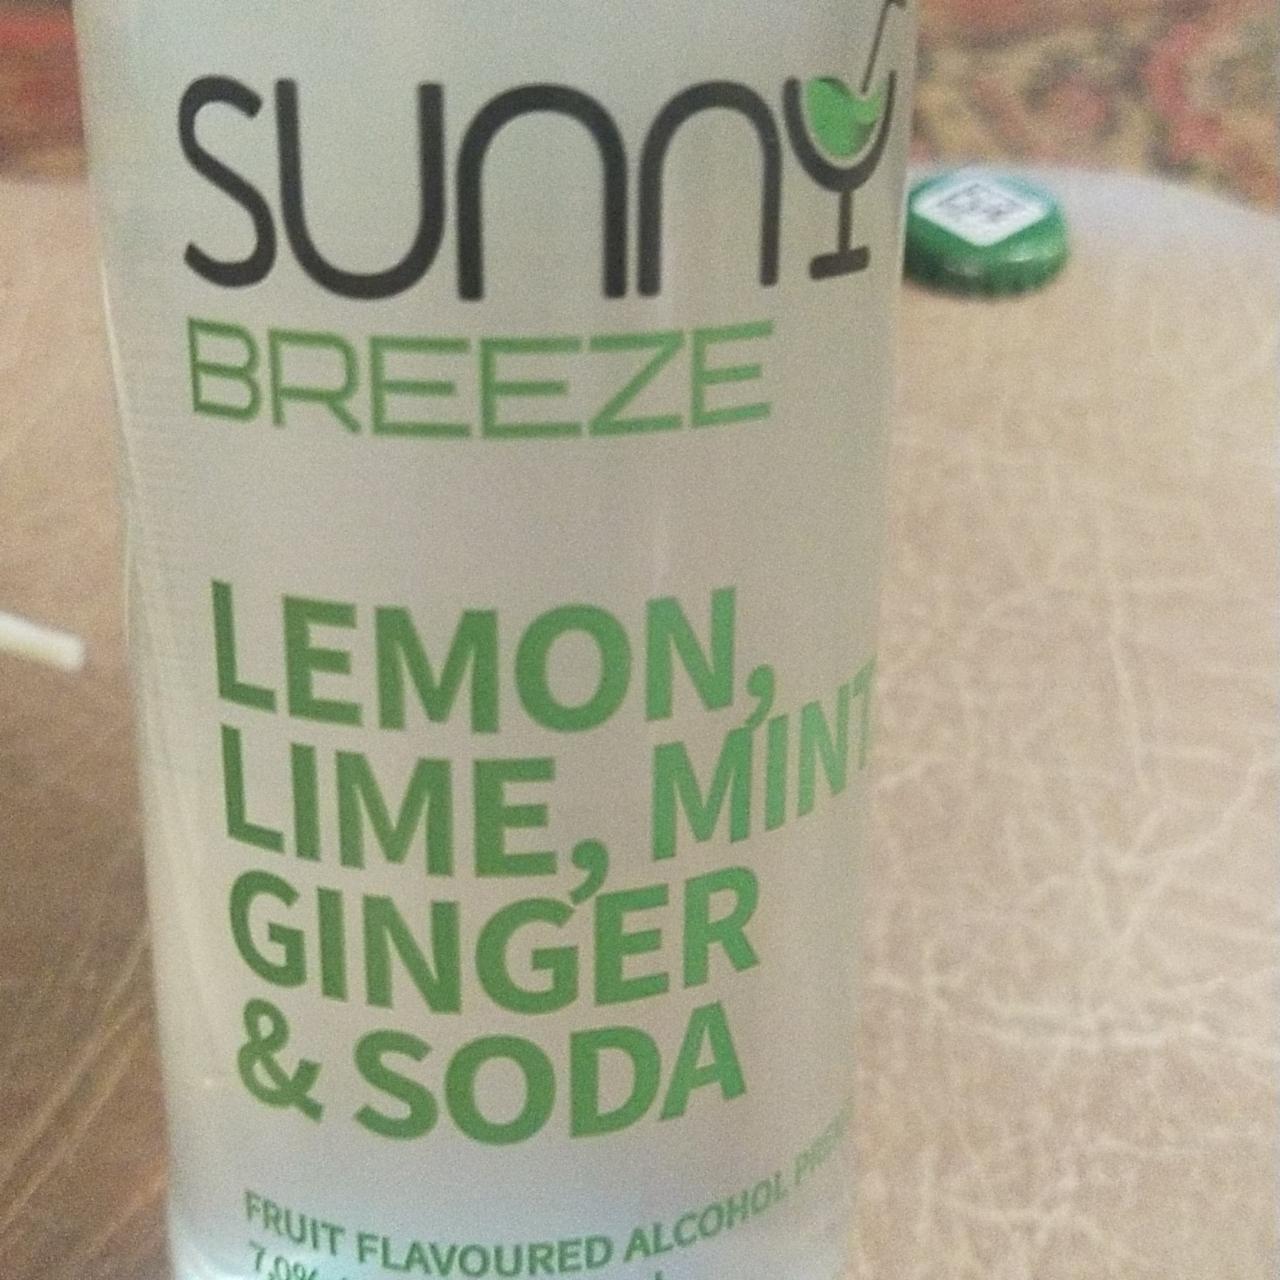 Фото - фруктовый алкогольный напиток лимон, лайм, мята, имбирь и содовая Sunny Breeze